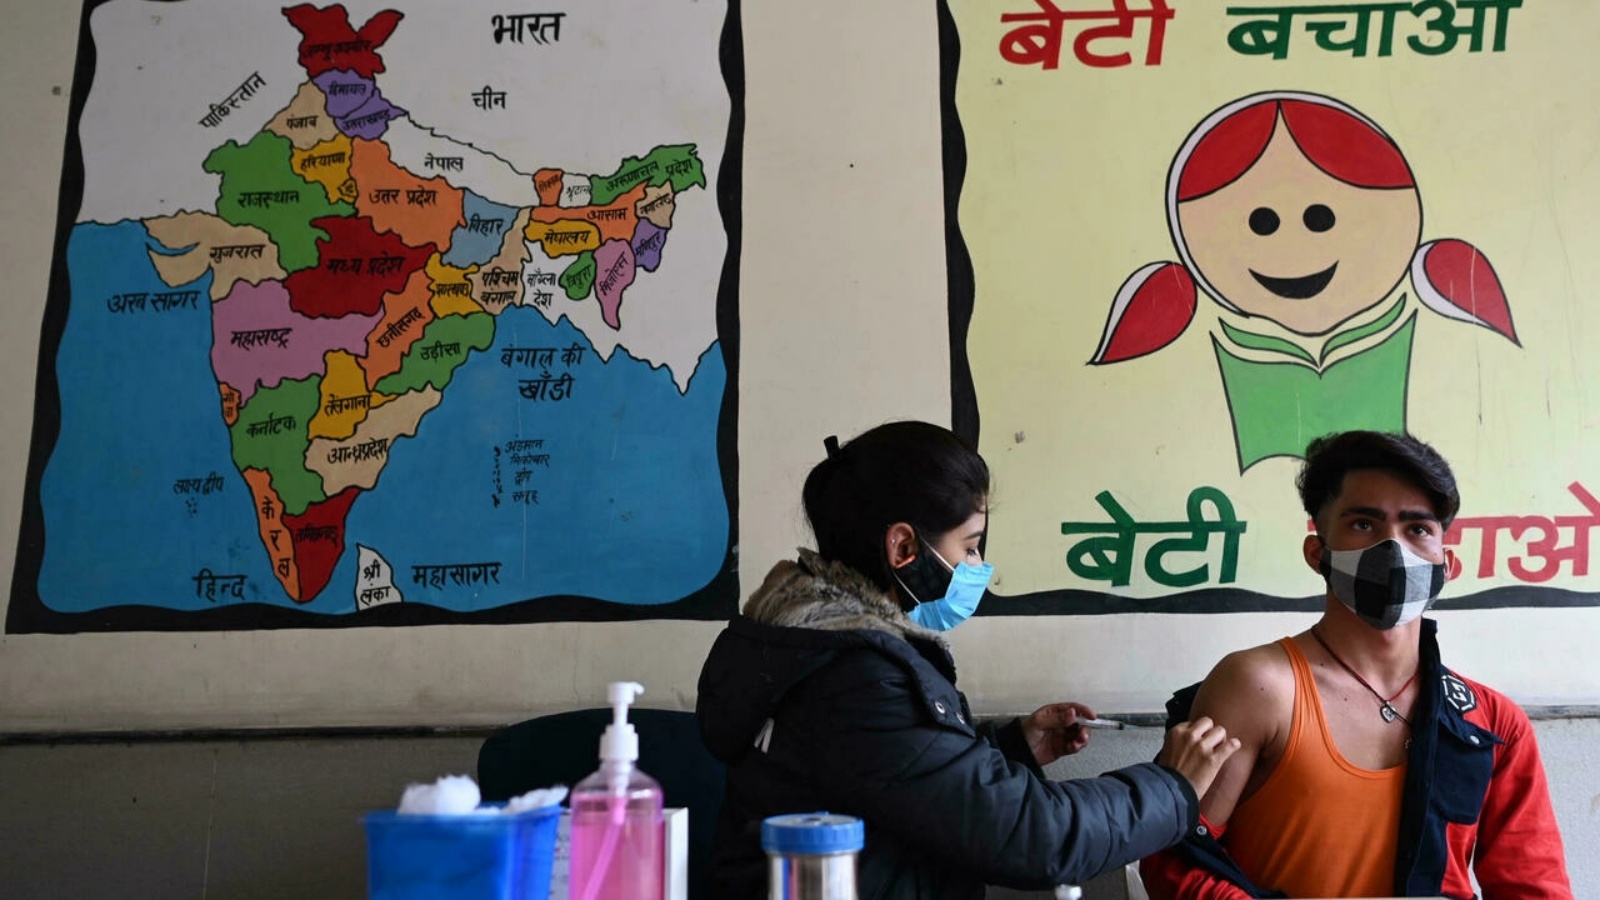 عاملة صحة تعطي جرعة من لقاح كورونا كوفيد-19 لشاب في الهند